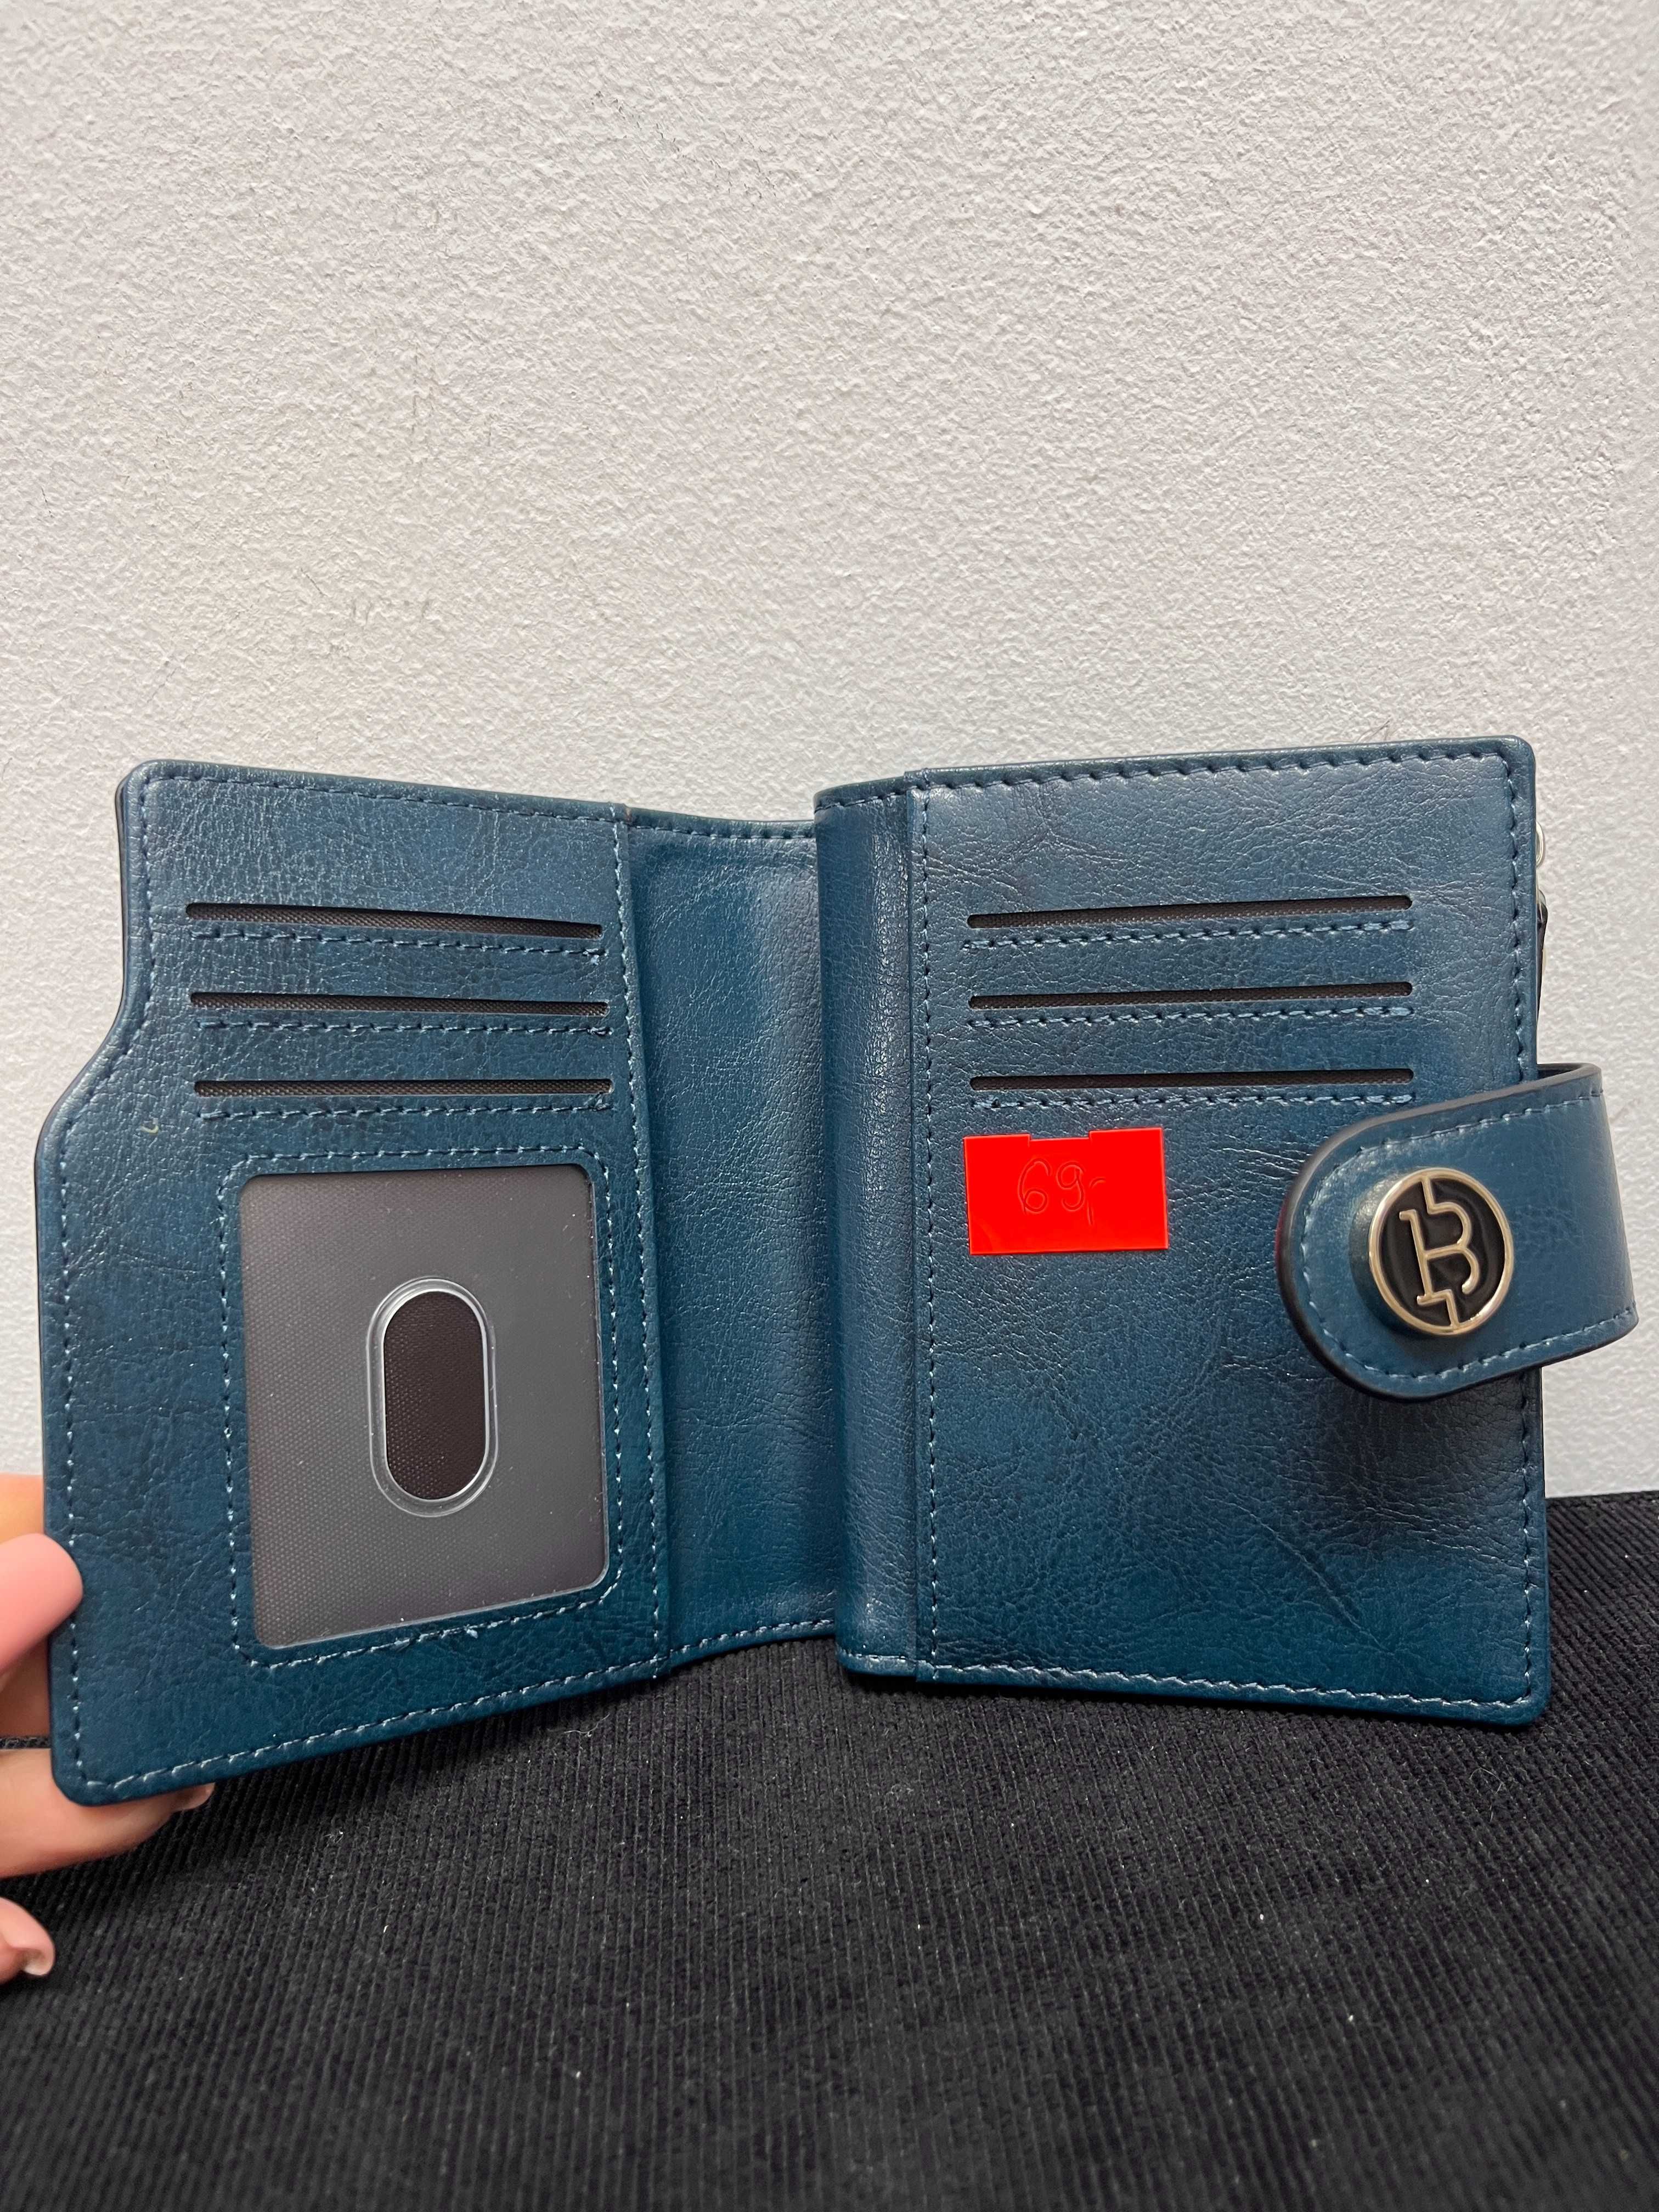 Damski portfel niebieski